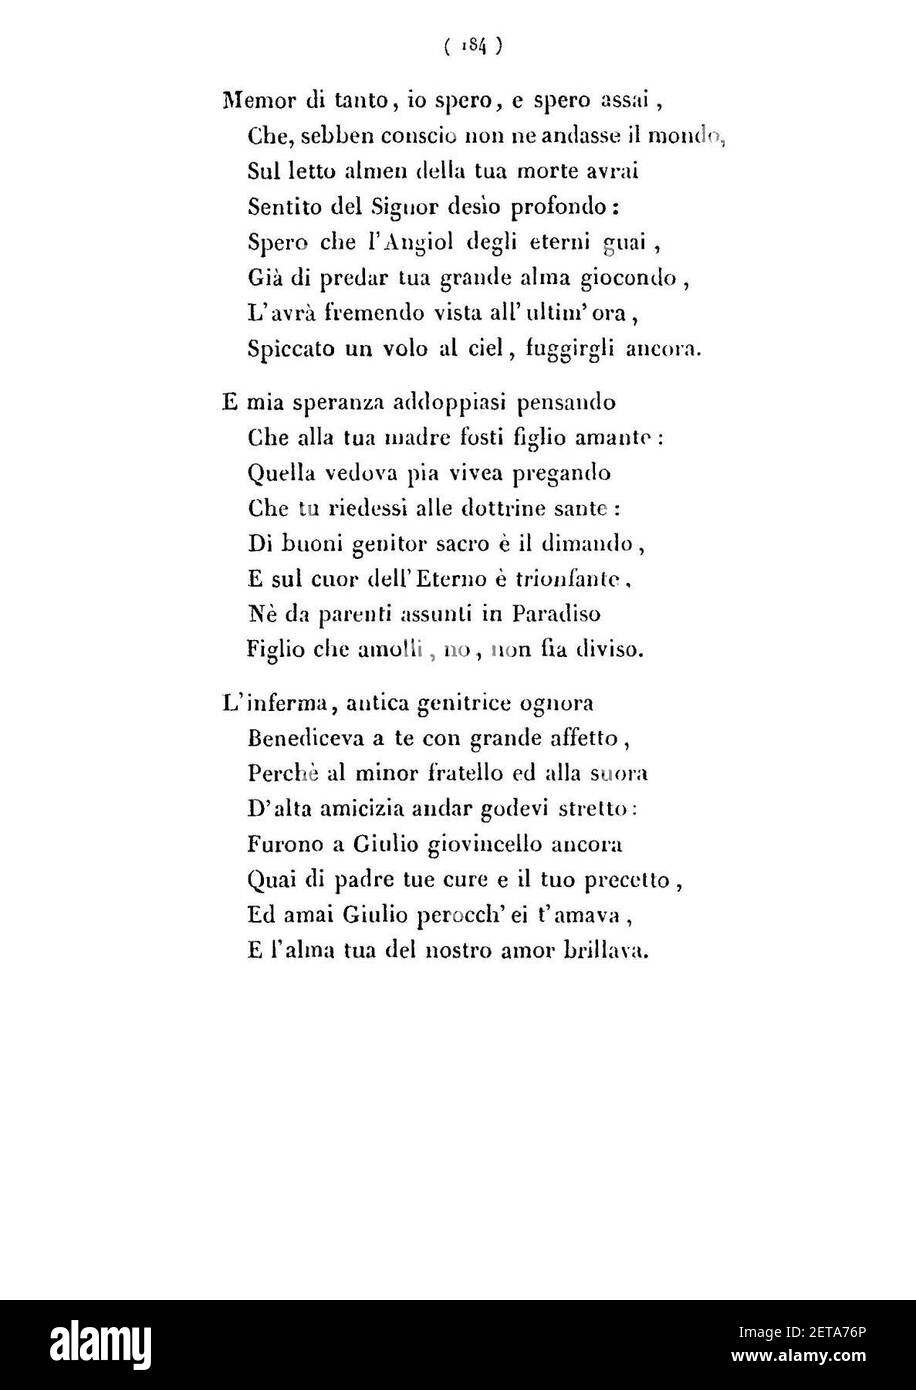 Pellico - Poesie inedite 185. Stock Photo